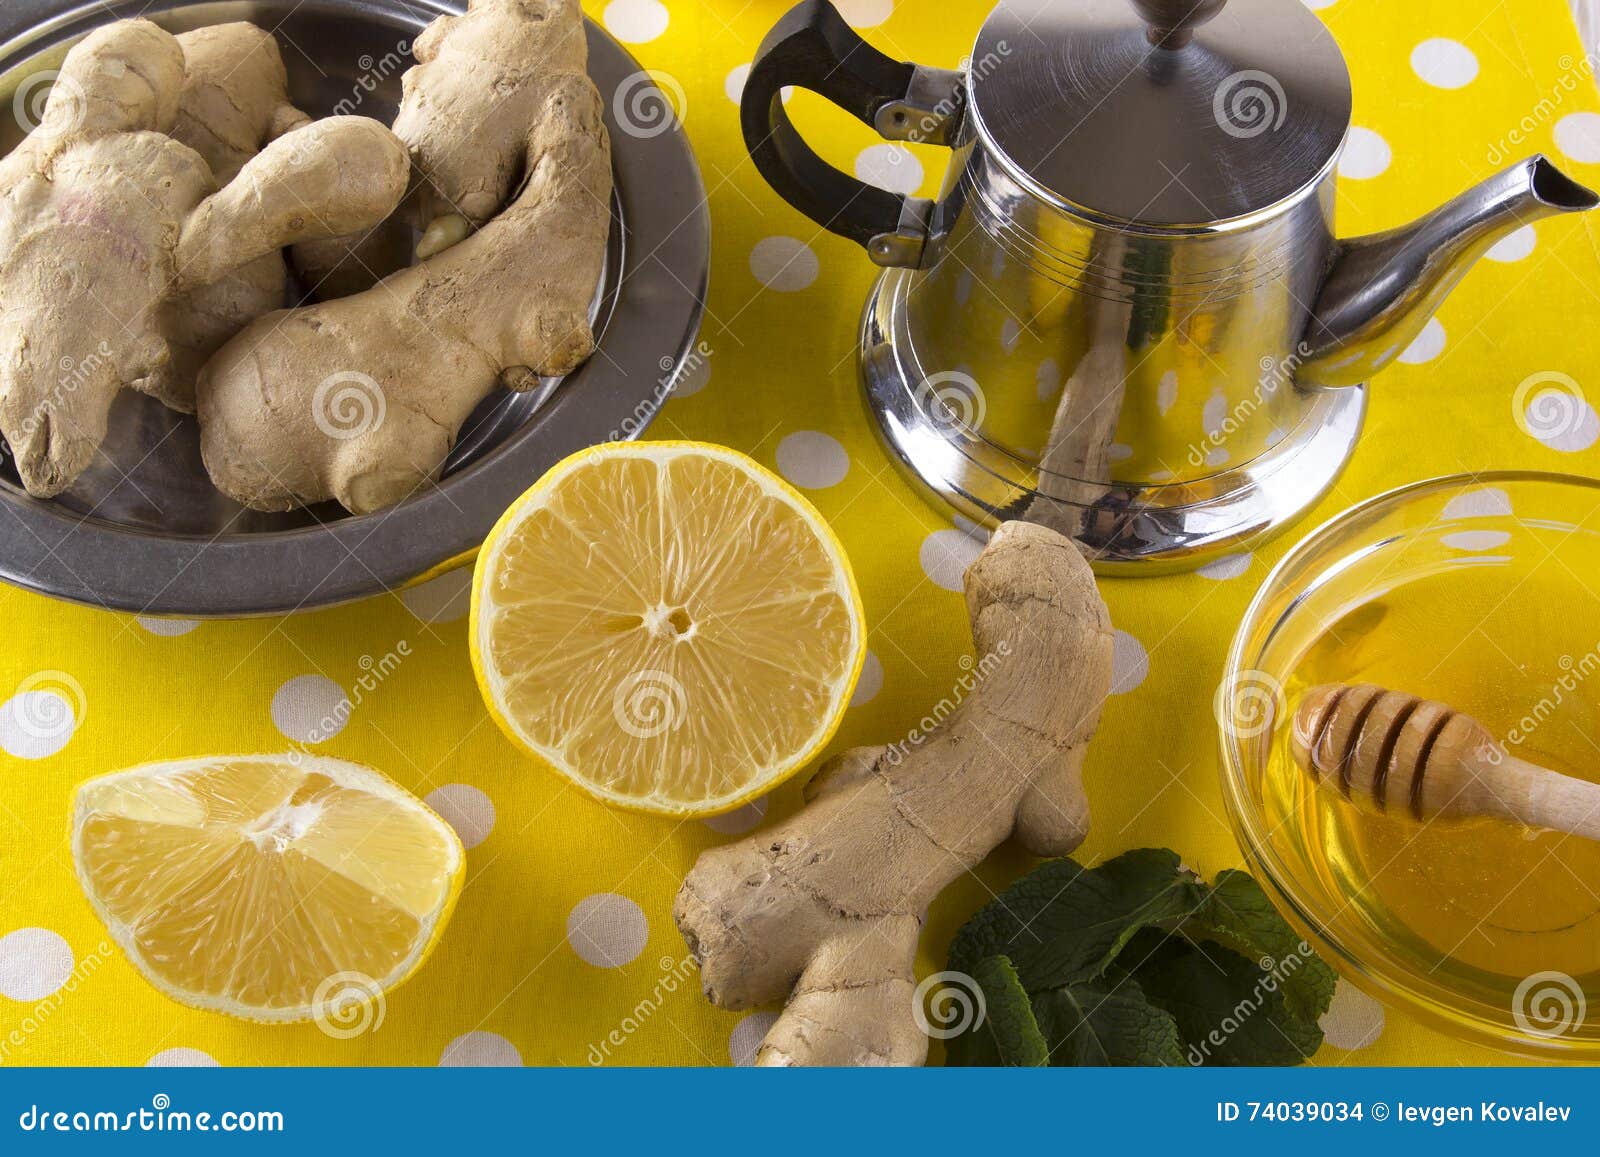 Teekanne Ingwertee Mit Honig Und Zitrone Stockfoto - Bild von ...